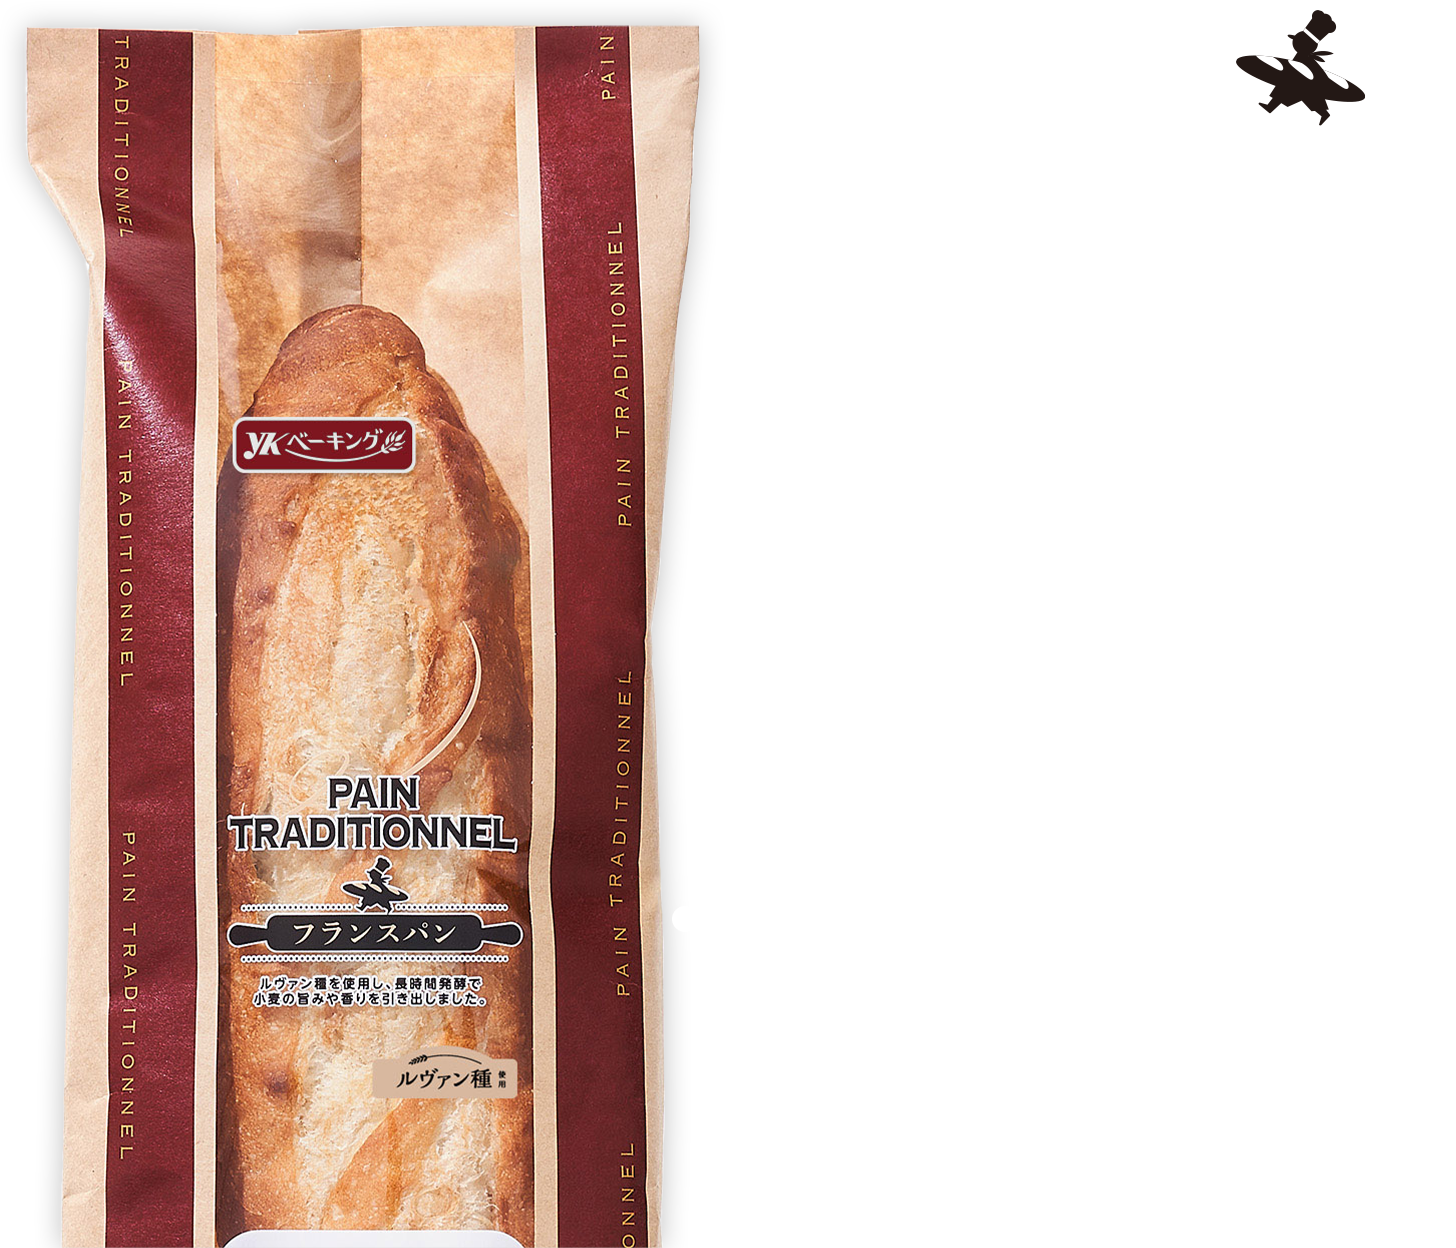 パンの美味しさが伝わる中が見えるパッケージ、ベーカリーショップのような落ち着いた紙製パッケージがポイントです